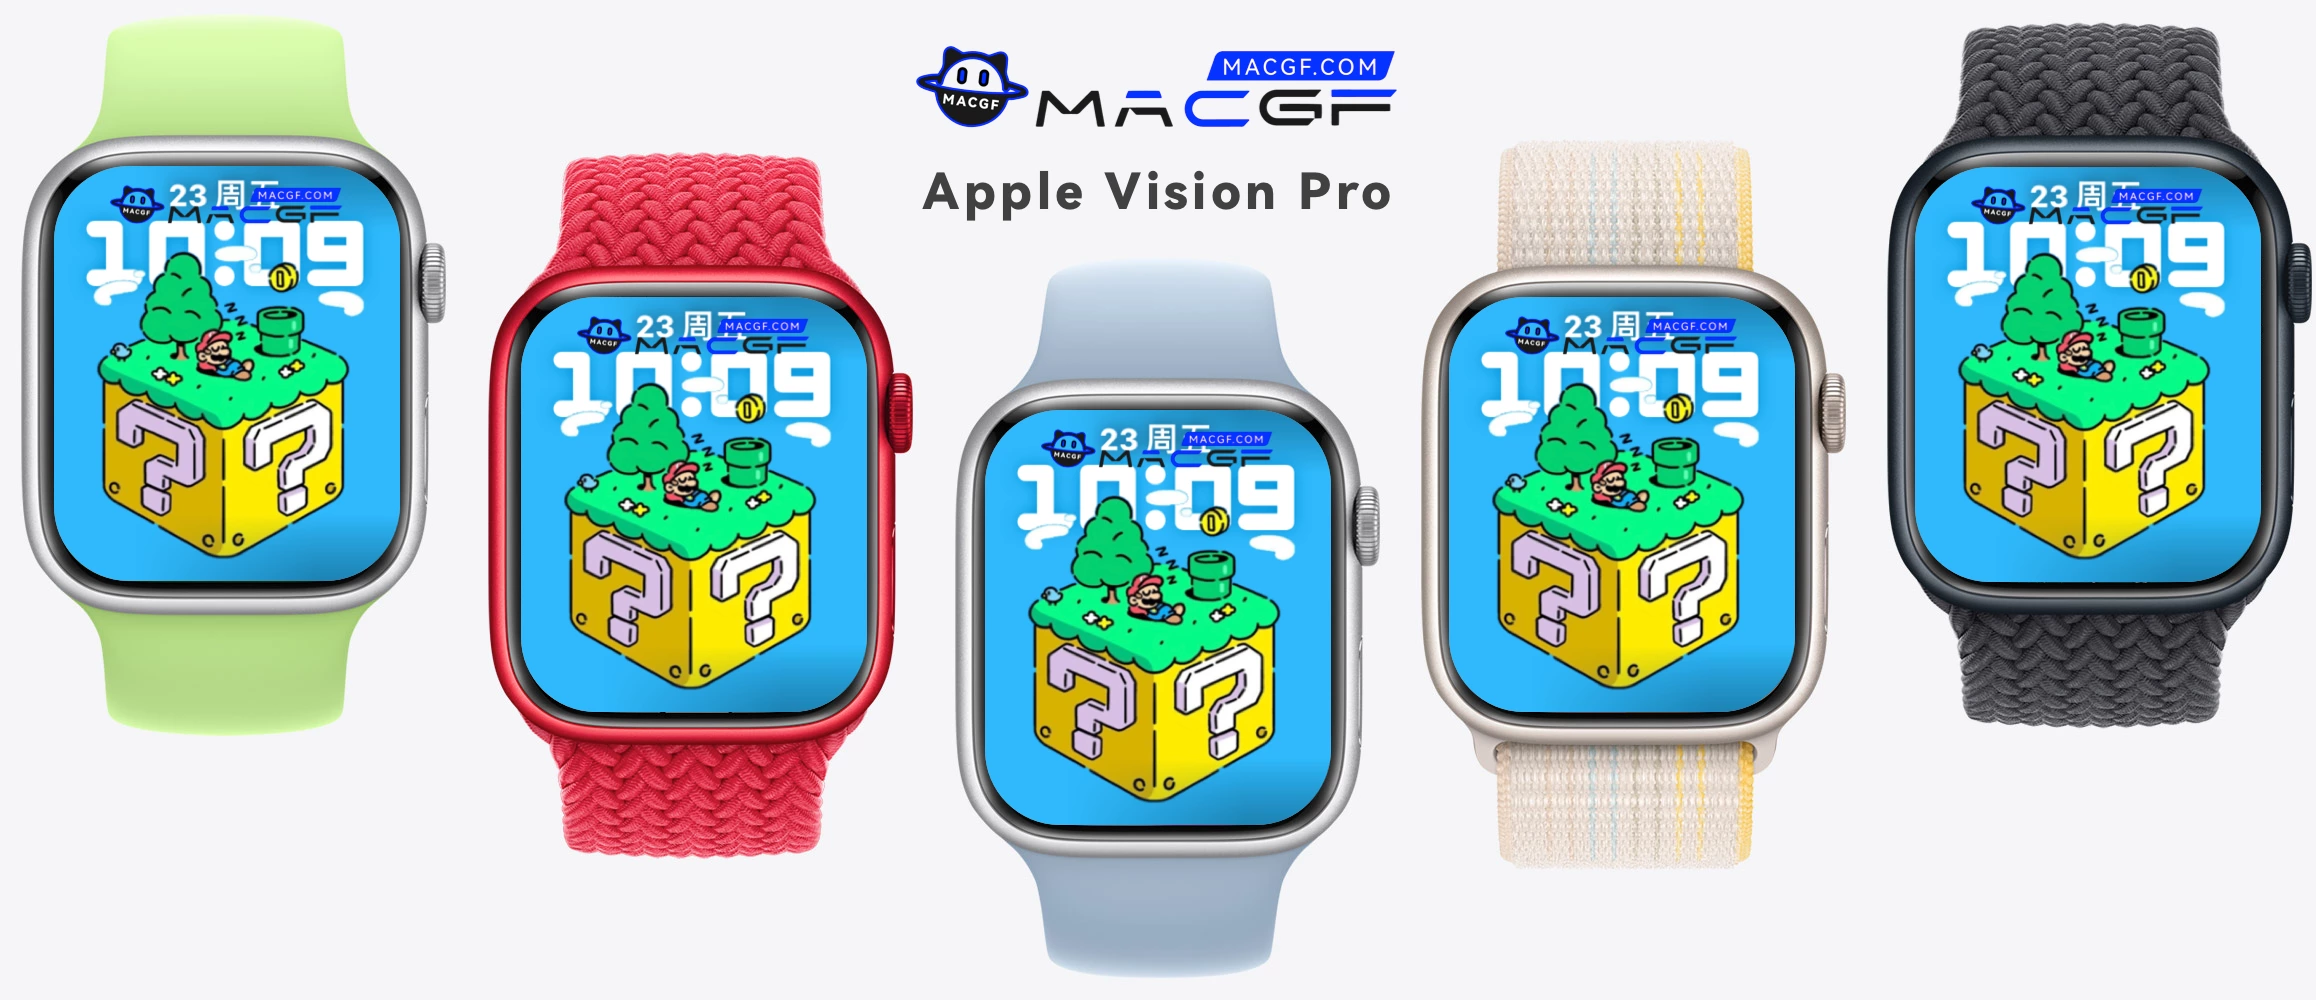 马里奥方块岛 可爱 Apple watch 精美原生表盘 - MACGF